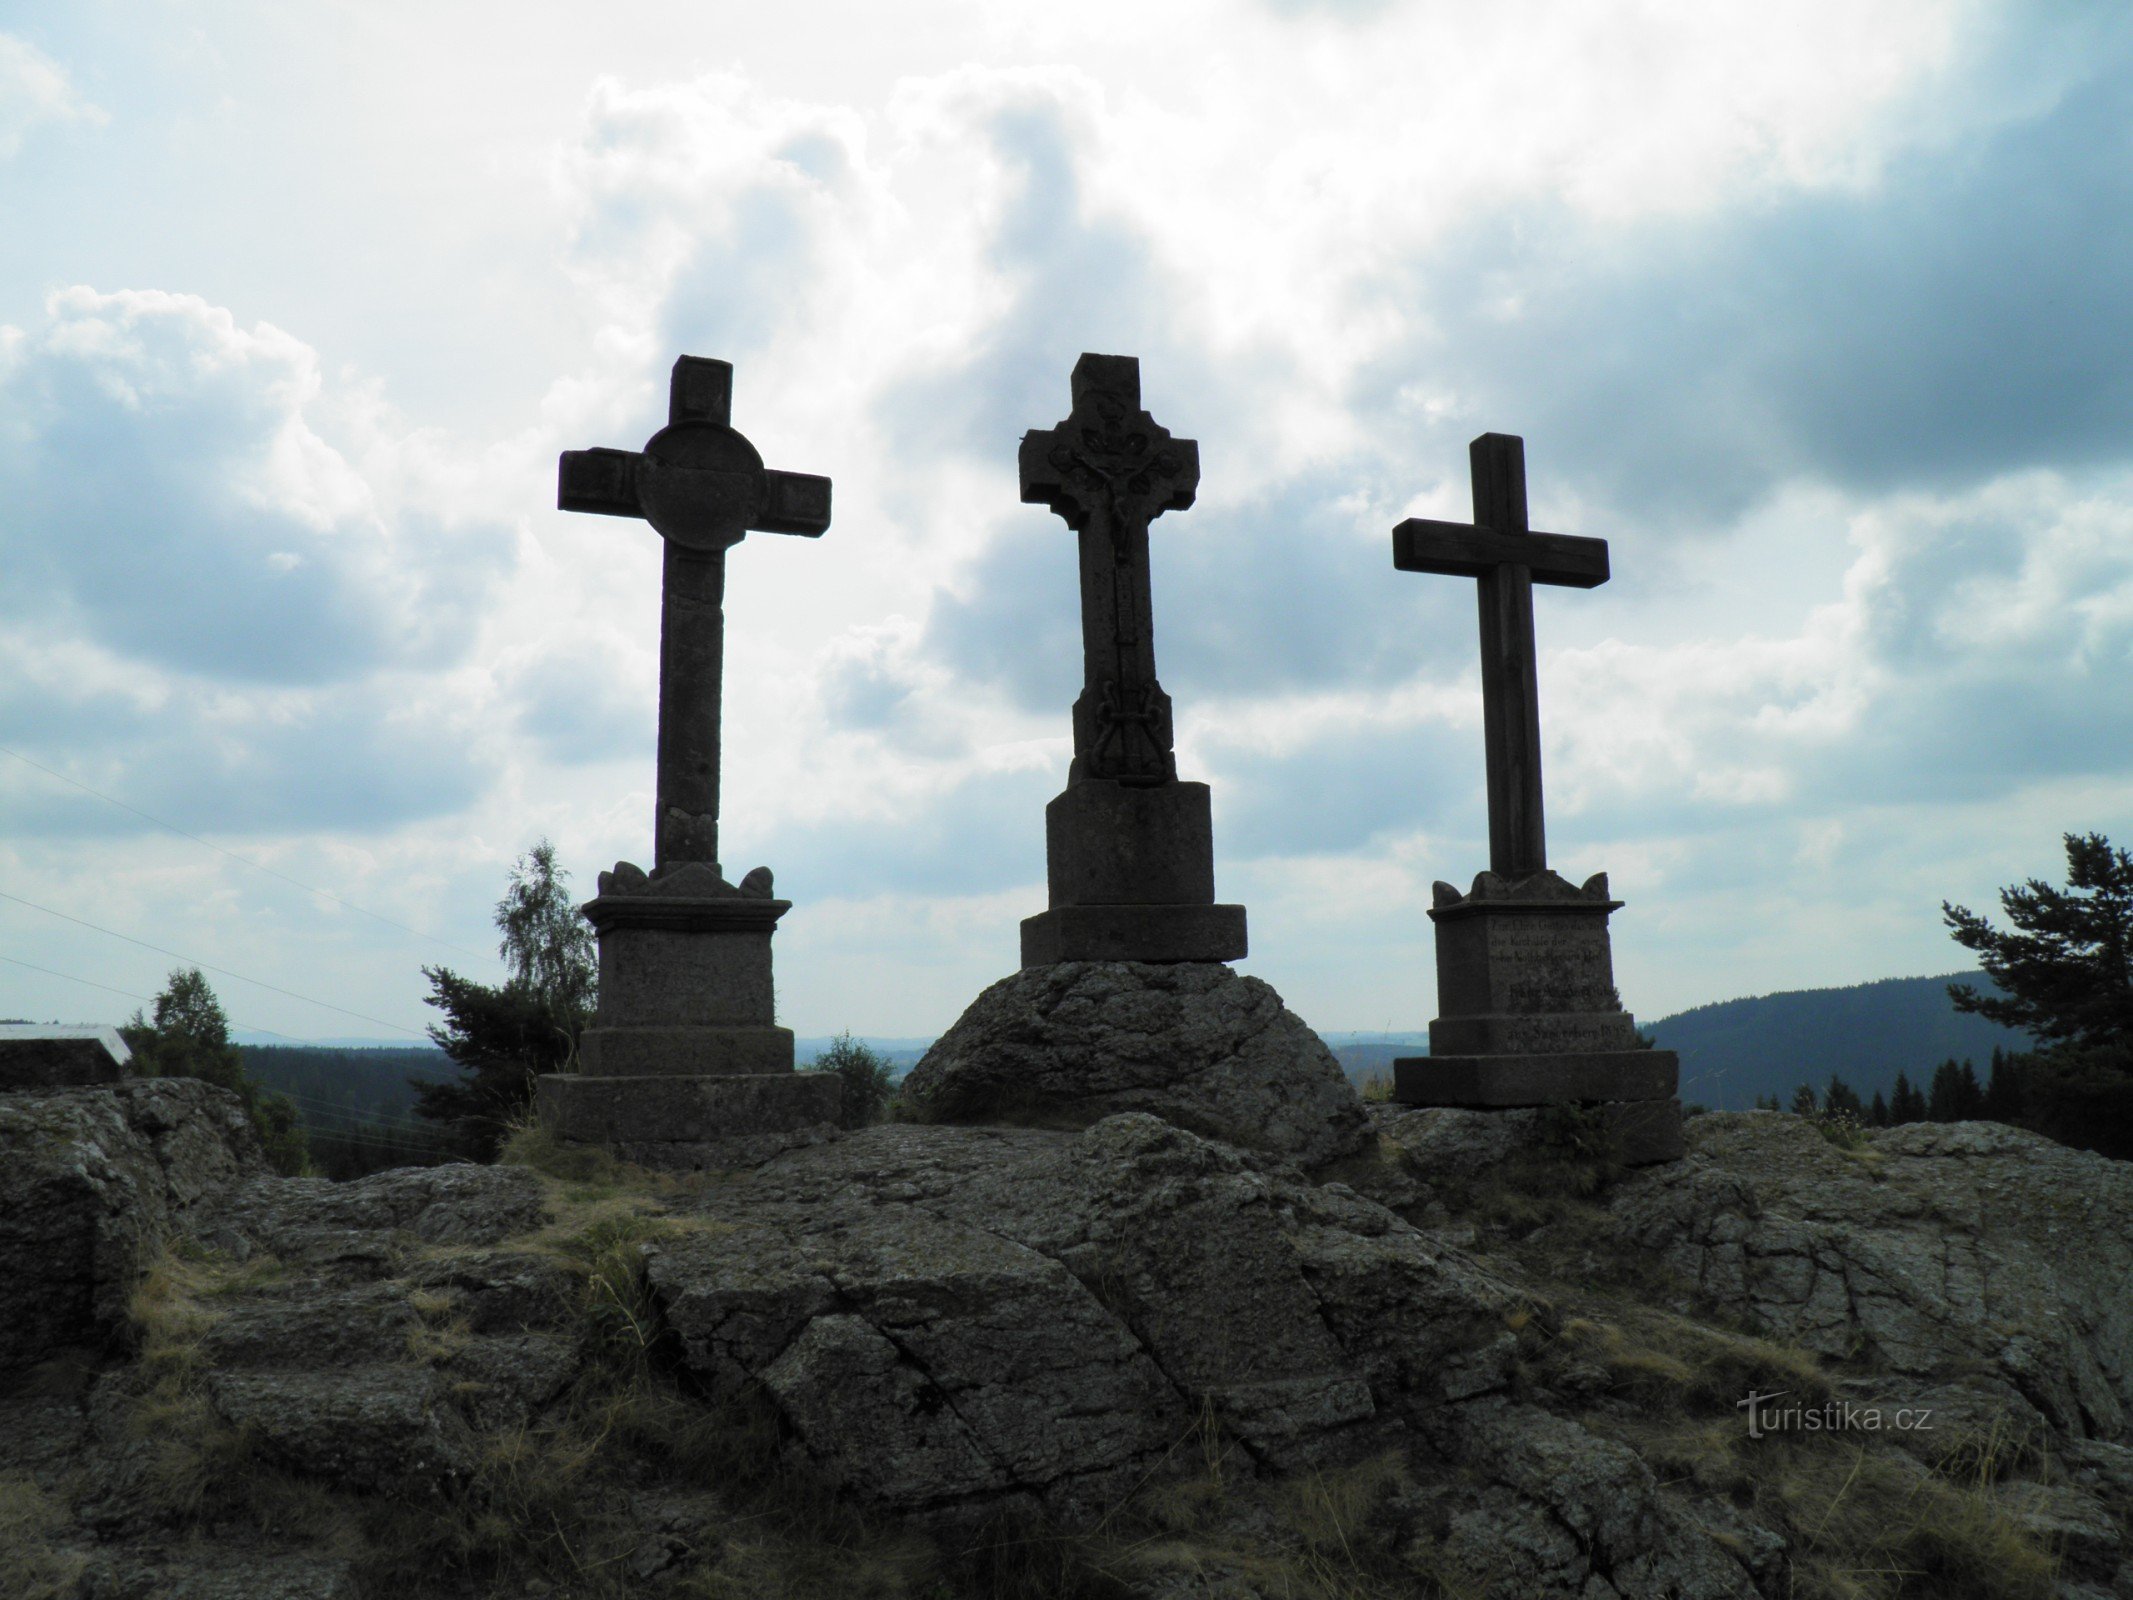 Tre croci nei pressi del villaggio di Prameny.